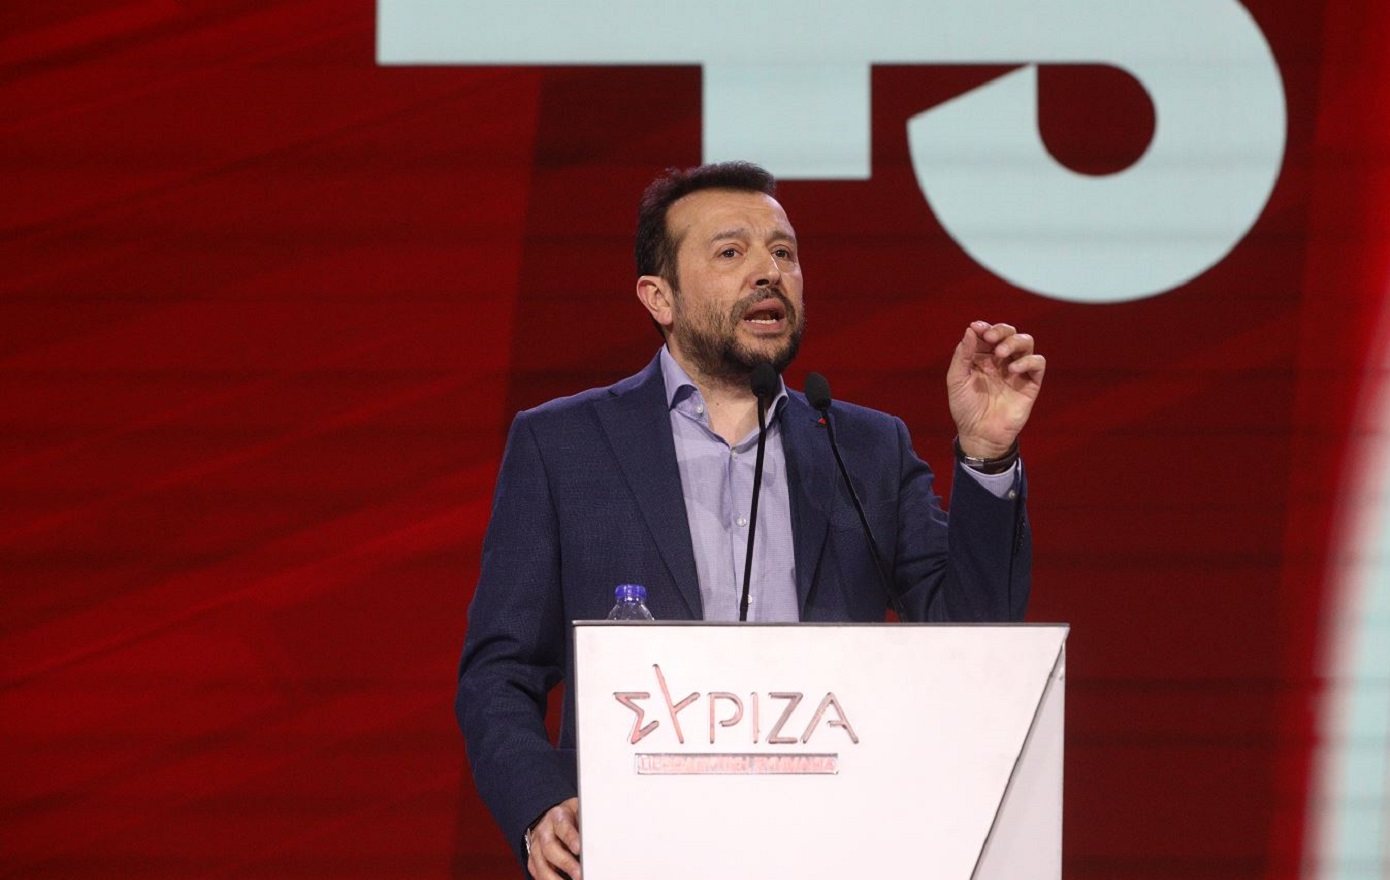 Νίκος Παππάς: Ο Χατζηδάκης ανακοίνωσε μέτρα του χρόνου, που η κοινωνία έχει ανάγκη σήμερα